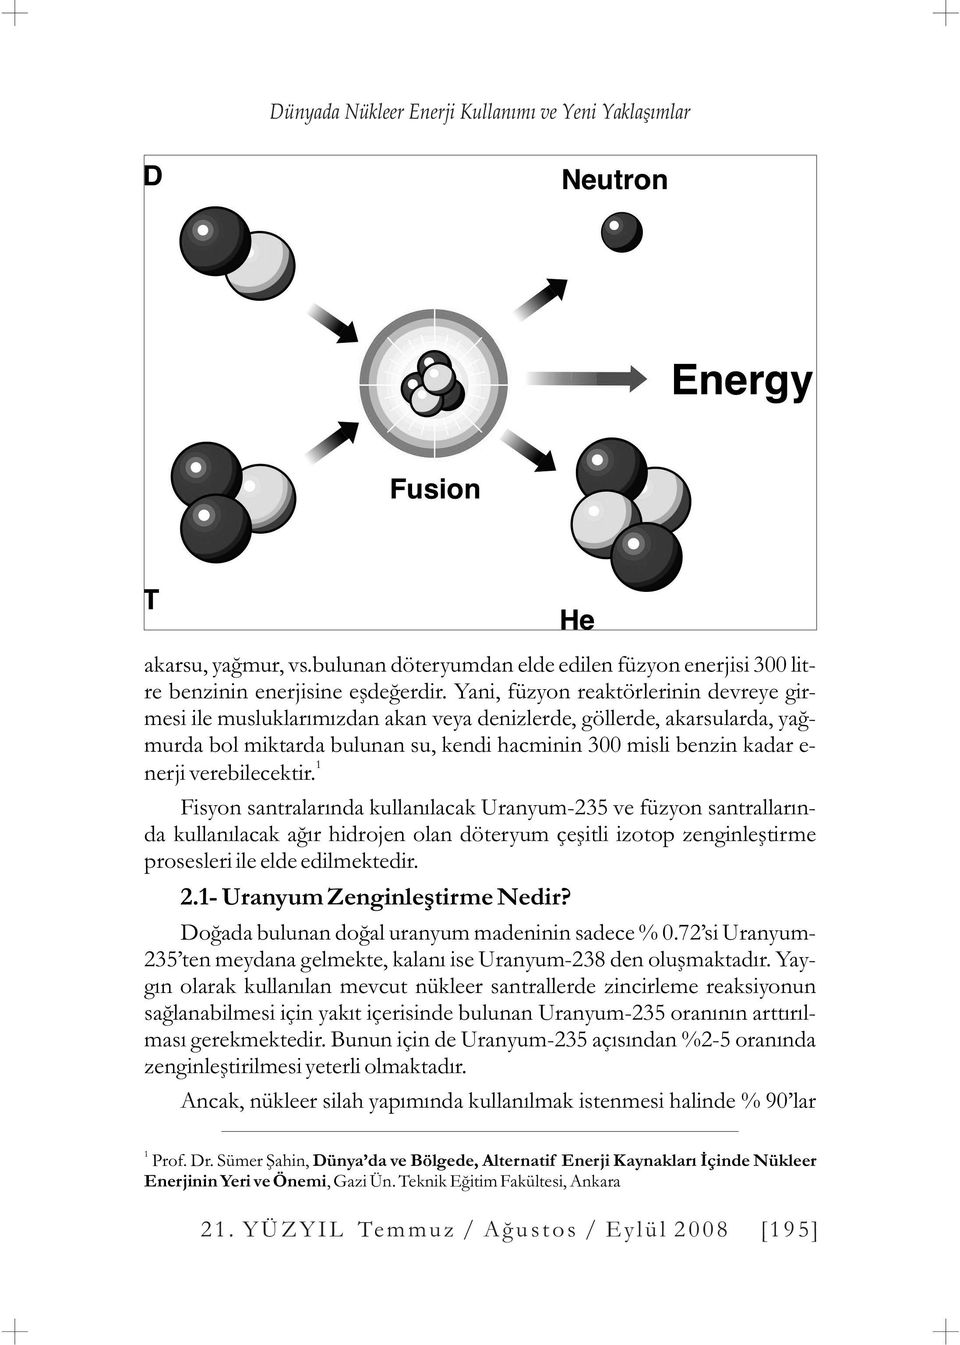 verebilecektir. Fisyon santralarýnda kullanýlacak Uranyum-235 ve füzyon santrallarýnda kullanýlacak aðýr hidrojen olan döteryum çeþitli izotop zenginleþtirme prosesleri ile elde edilmektedir. 2.